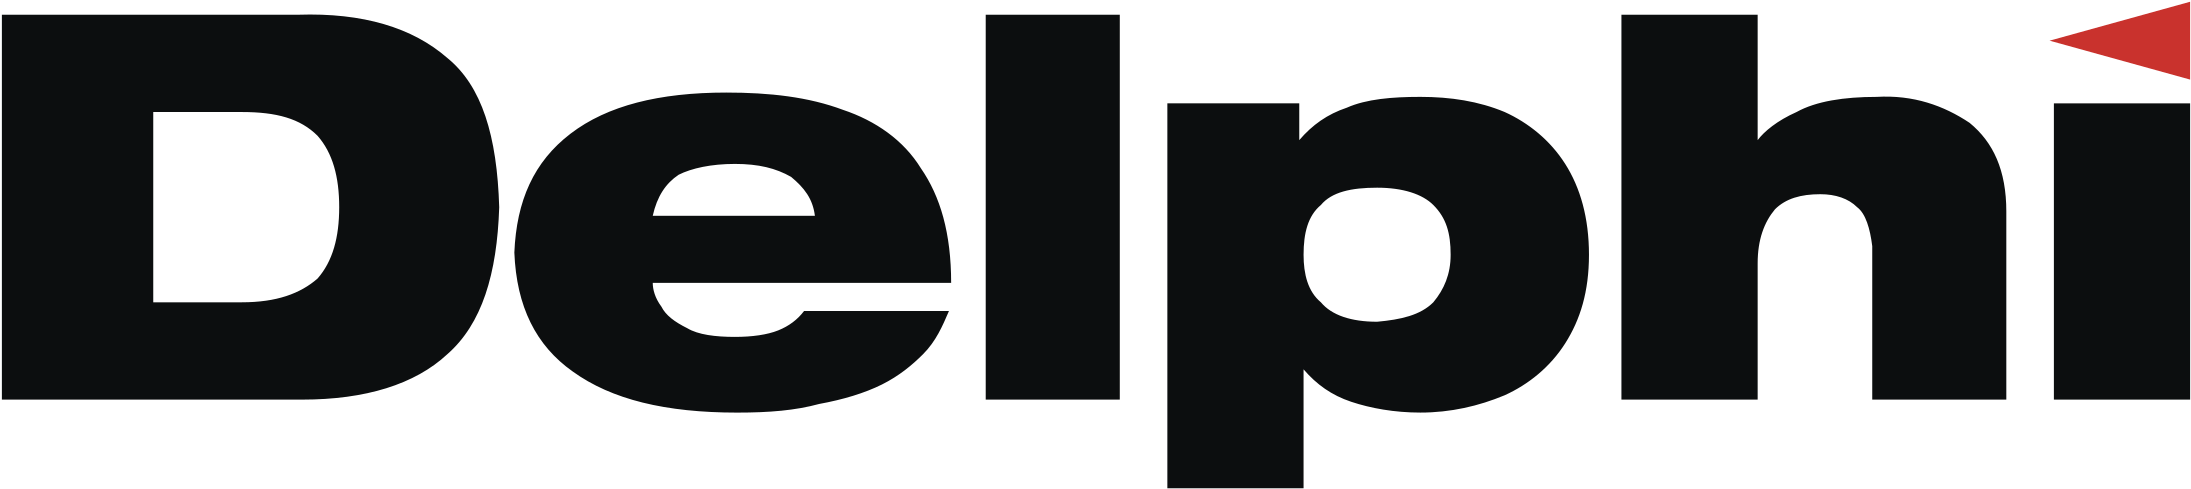 Delphi Logo Png Transparent - Embarcadero Delphi Clipart (2400x2400), Png Download